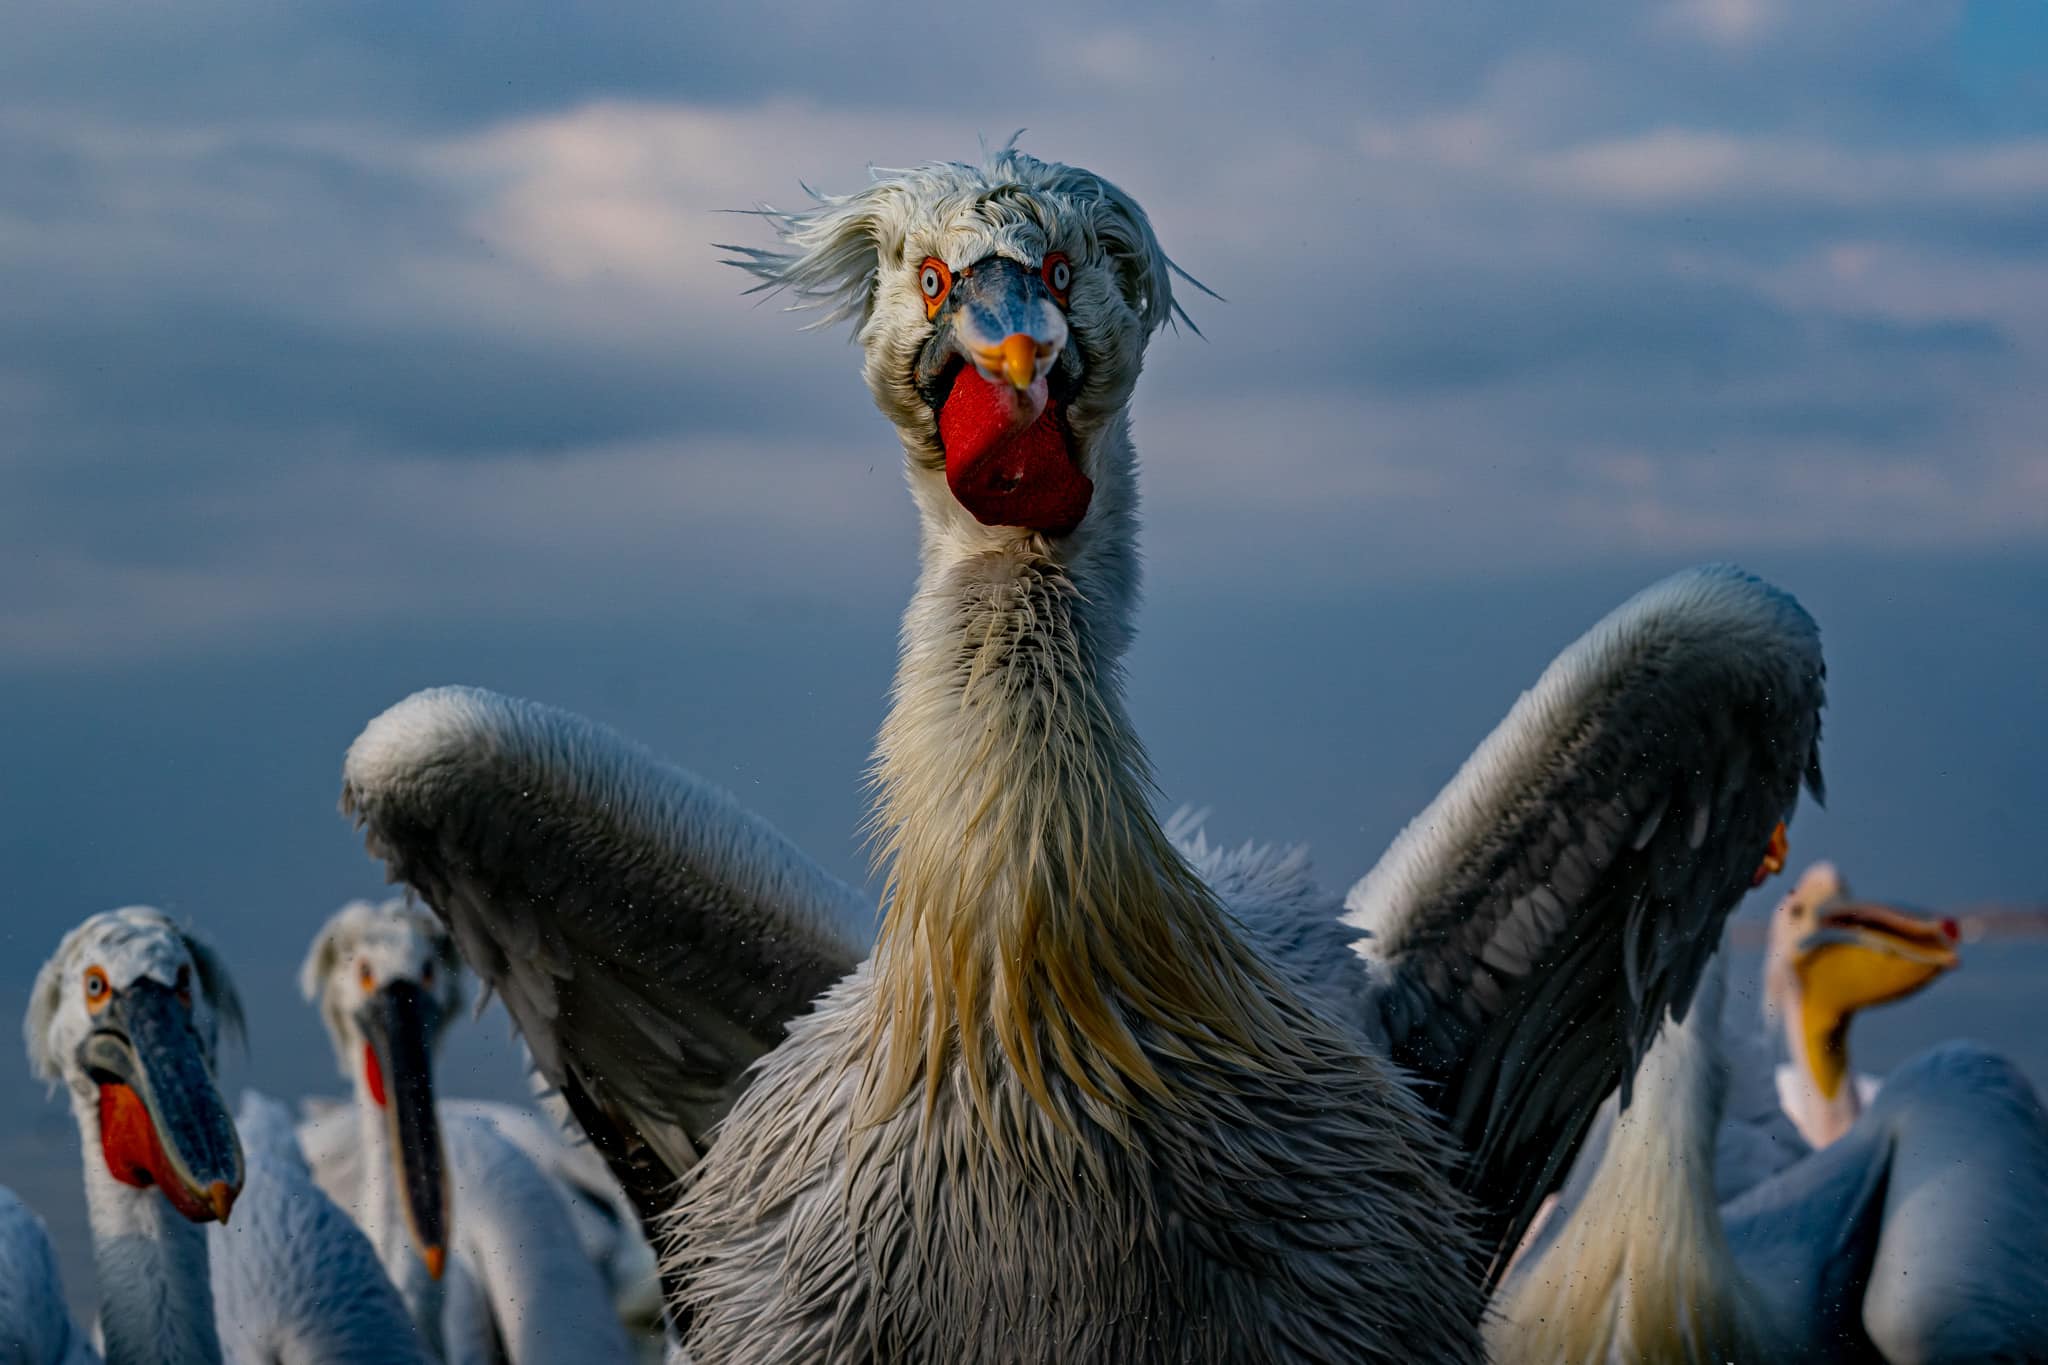 kerkini lake pelicans marius tudor